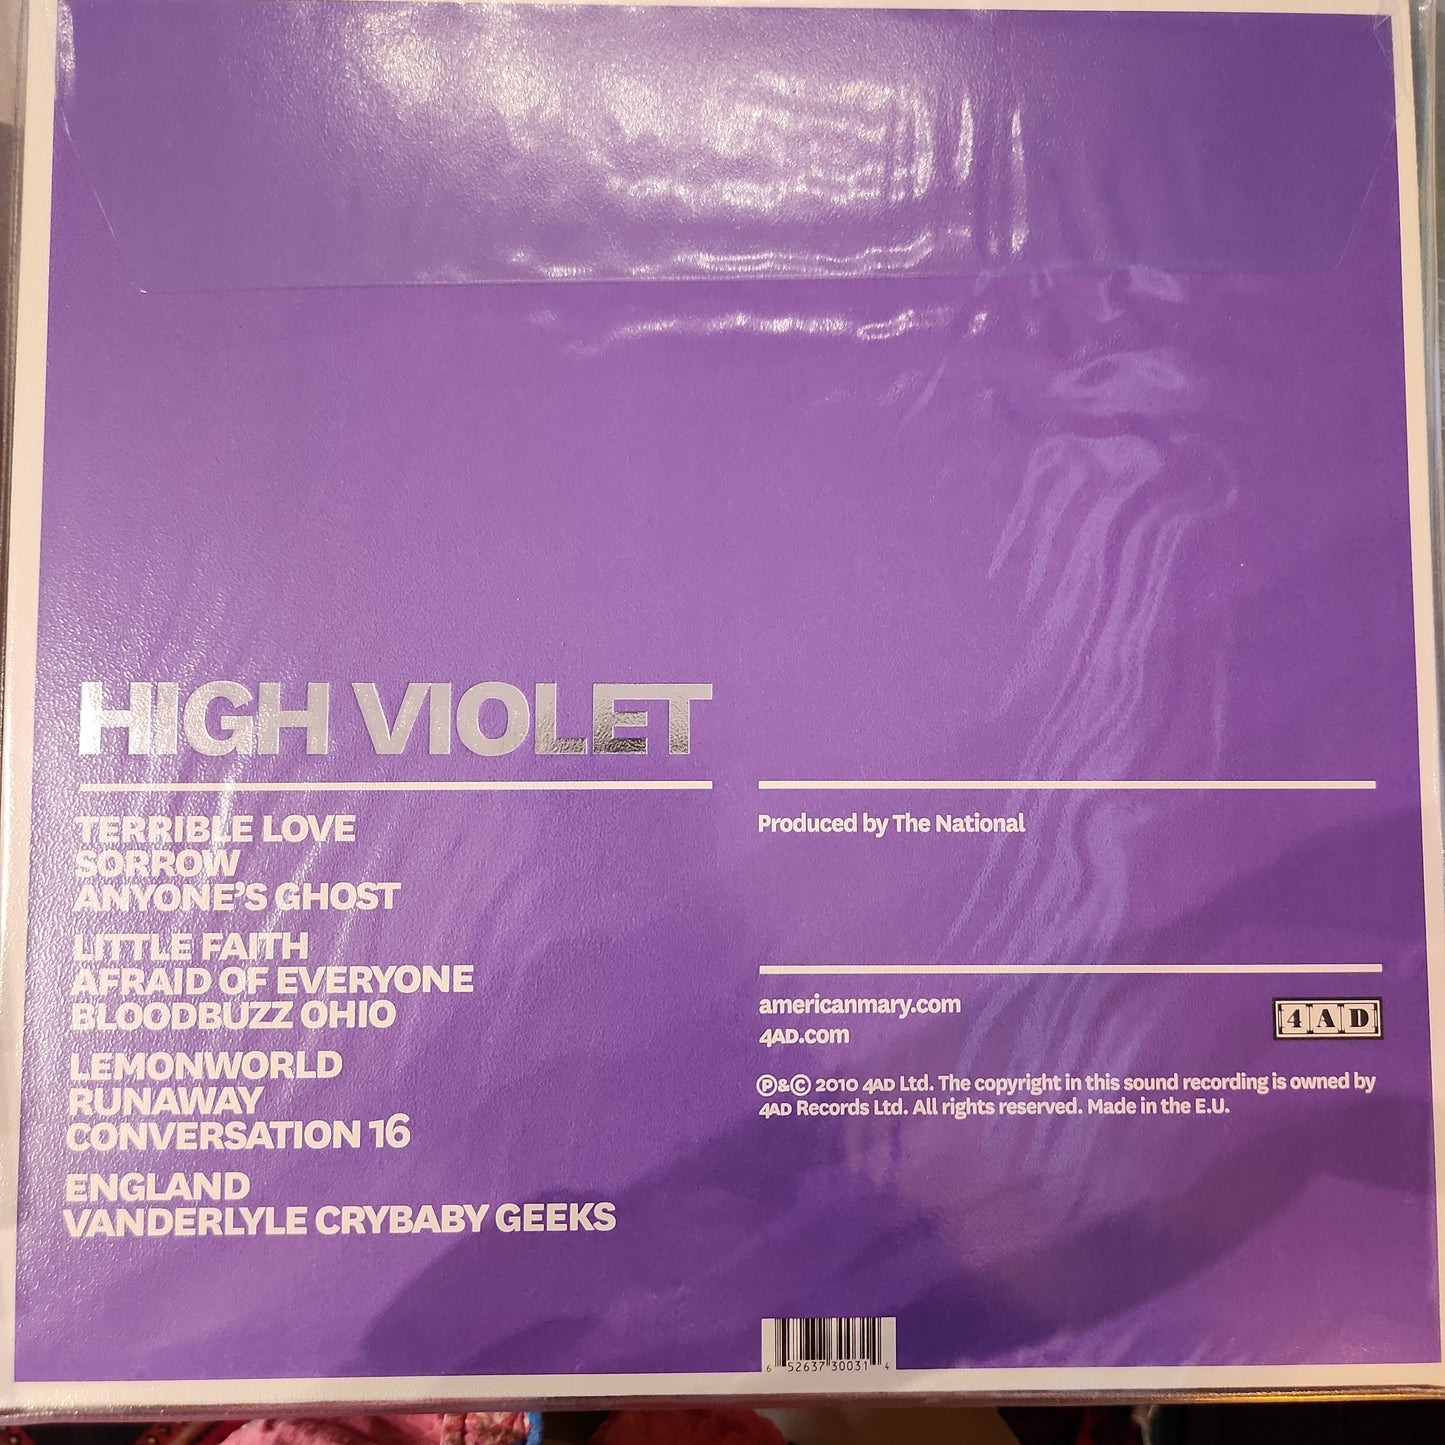 The National - High Violet - Vinyl LP